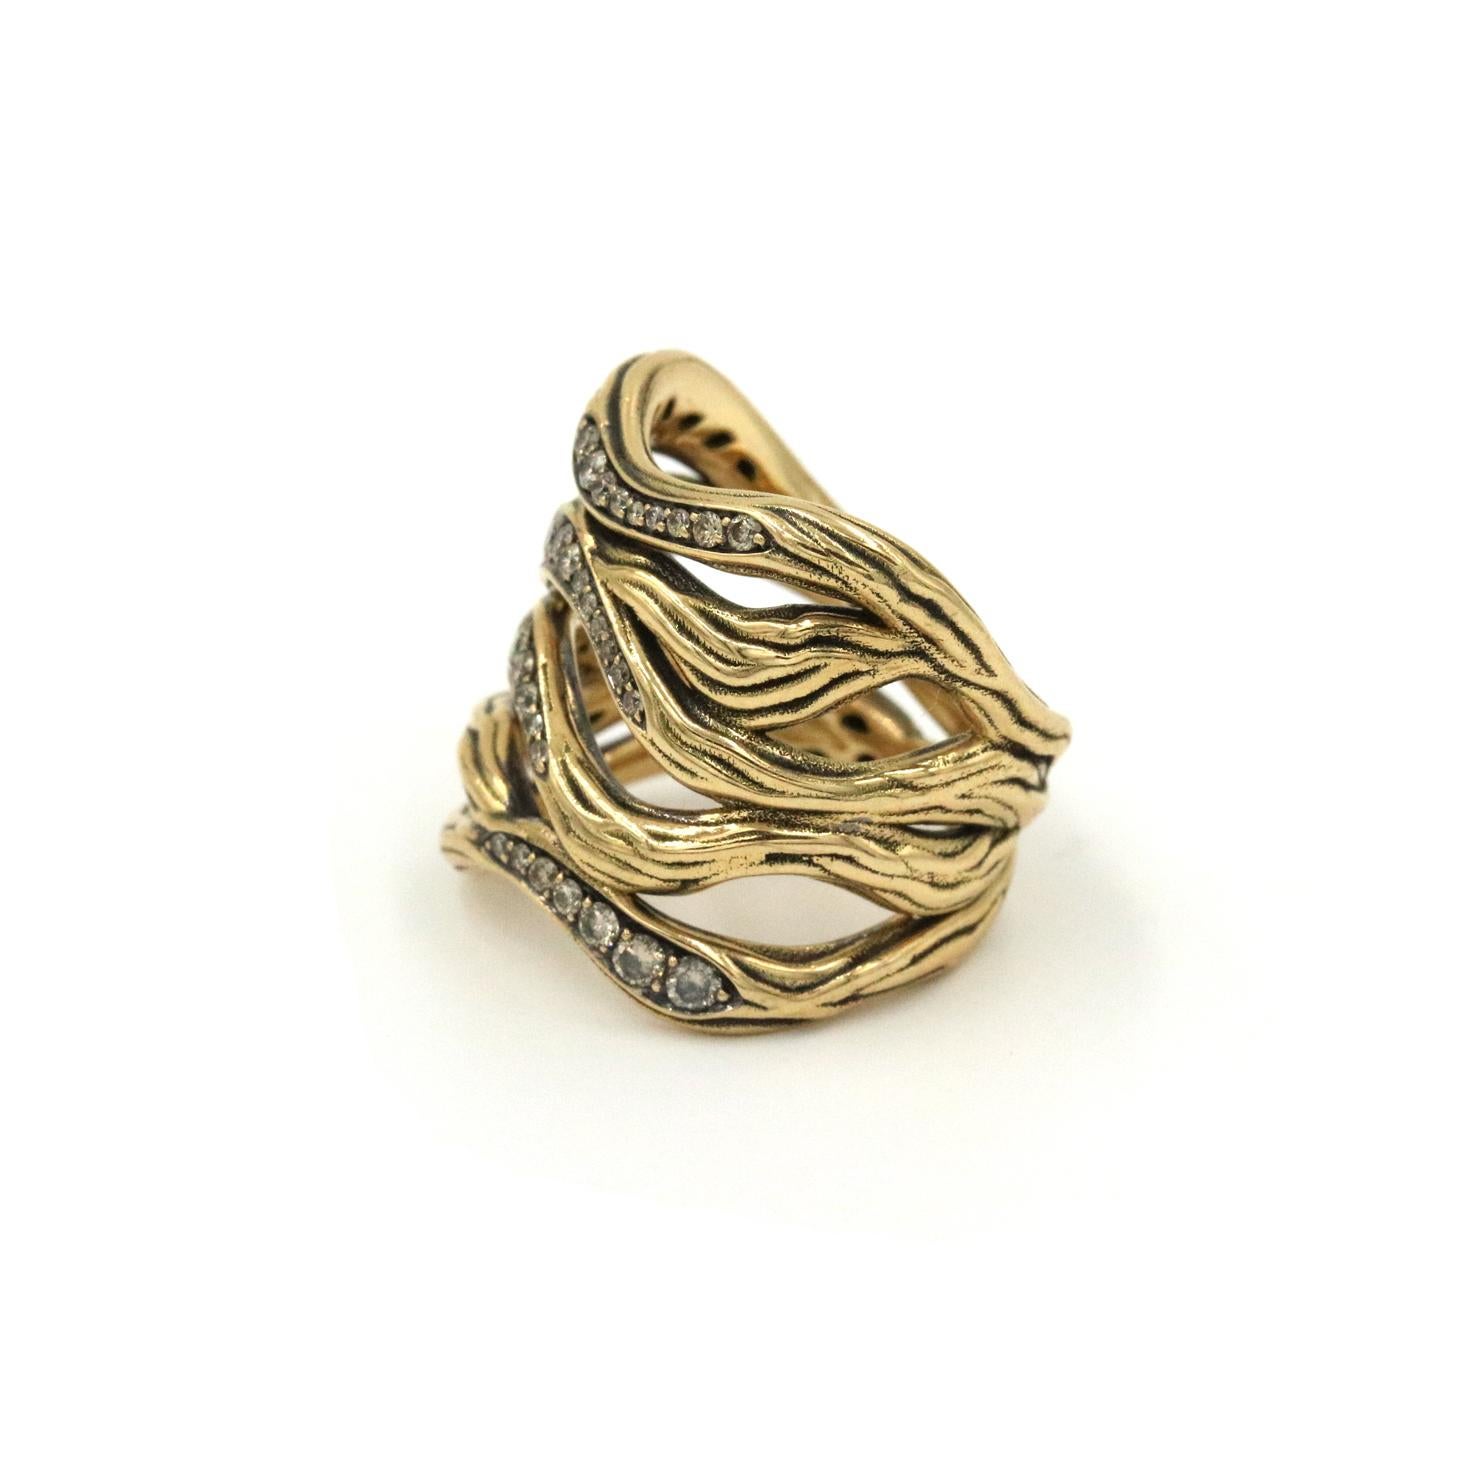 Antonini Vulcano Diamond Fashion Ring mit 4 Reihen von Champagner Diamanten in schwarzem Rhodium und 18K Gelbgold gesetzt.